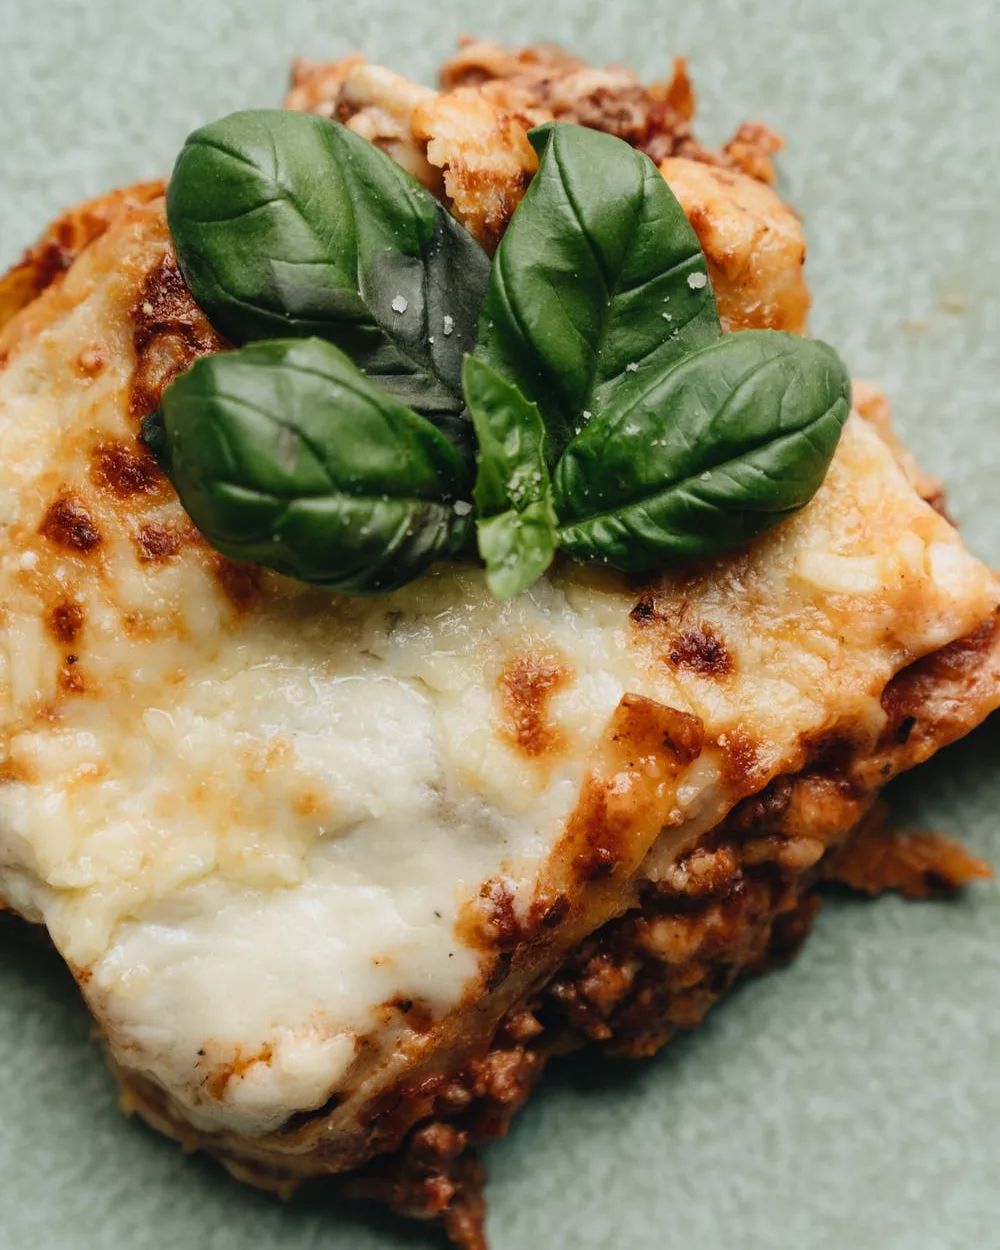 Oké ik mag dan misschien niet van Italiaanse afkomst zijn. Maar lasagne maken doe ik als de beste. Geen authentiek recept, maar wel mijn favoriete bereidingswijze. Deze lasagne is perfect! Ik weet zeker dat jij dit recept ook zal waarderen. Ben je klaar voor wat comfort food? Laten we aan de slag gaan. 🥰

Het recept vind je in mijn bio. Dit is de link die je op mijn instagram profiel ziet. 😊

Hou jij van lasagne? 😍

#eten #food #lekker #lekkereten #foodie #gezond #gezondeten #koken #genieten #instafood #foodporn #lunch #watetenwevandaag #avondeten #healthy #diner #foodphotography #eetsmakelijk #recepten #healthyfood #restaurant #homemade #foodlover #recept #drinken #foodstagram #foodblogger #lasagne #voeding #delicious